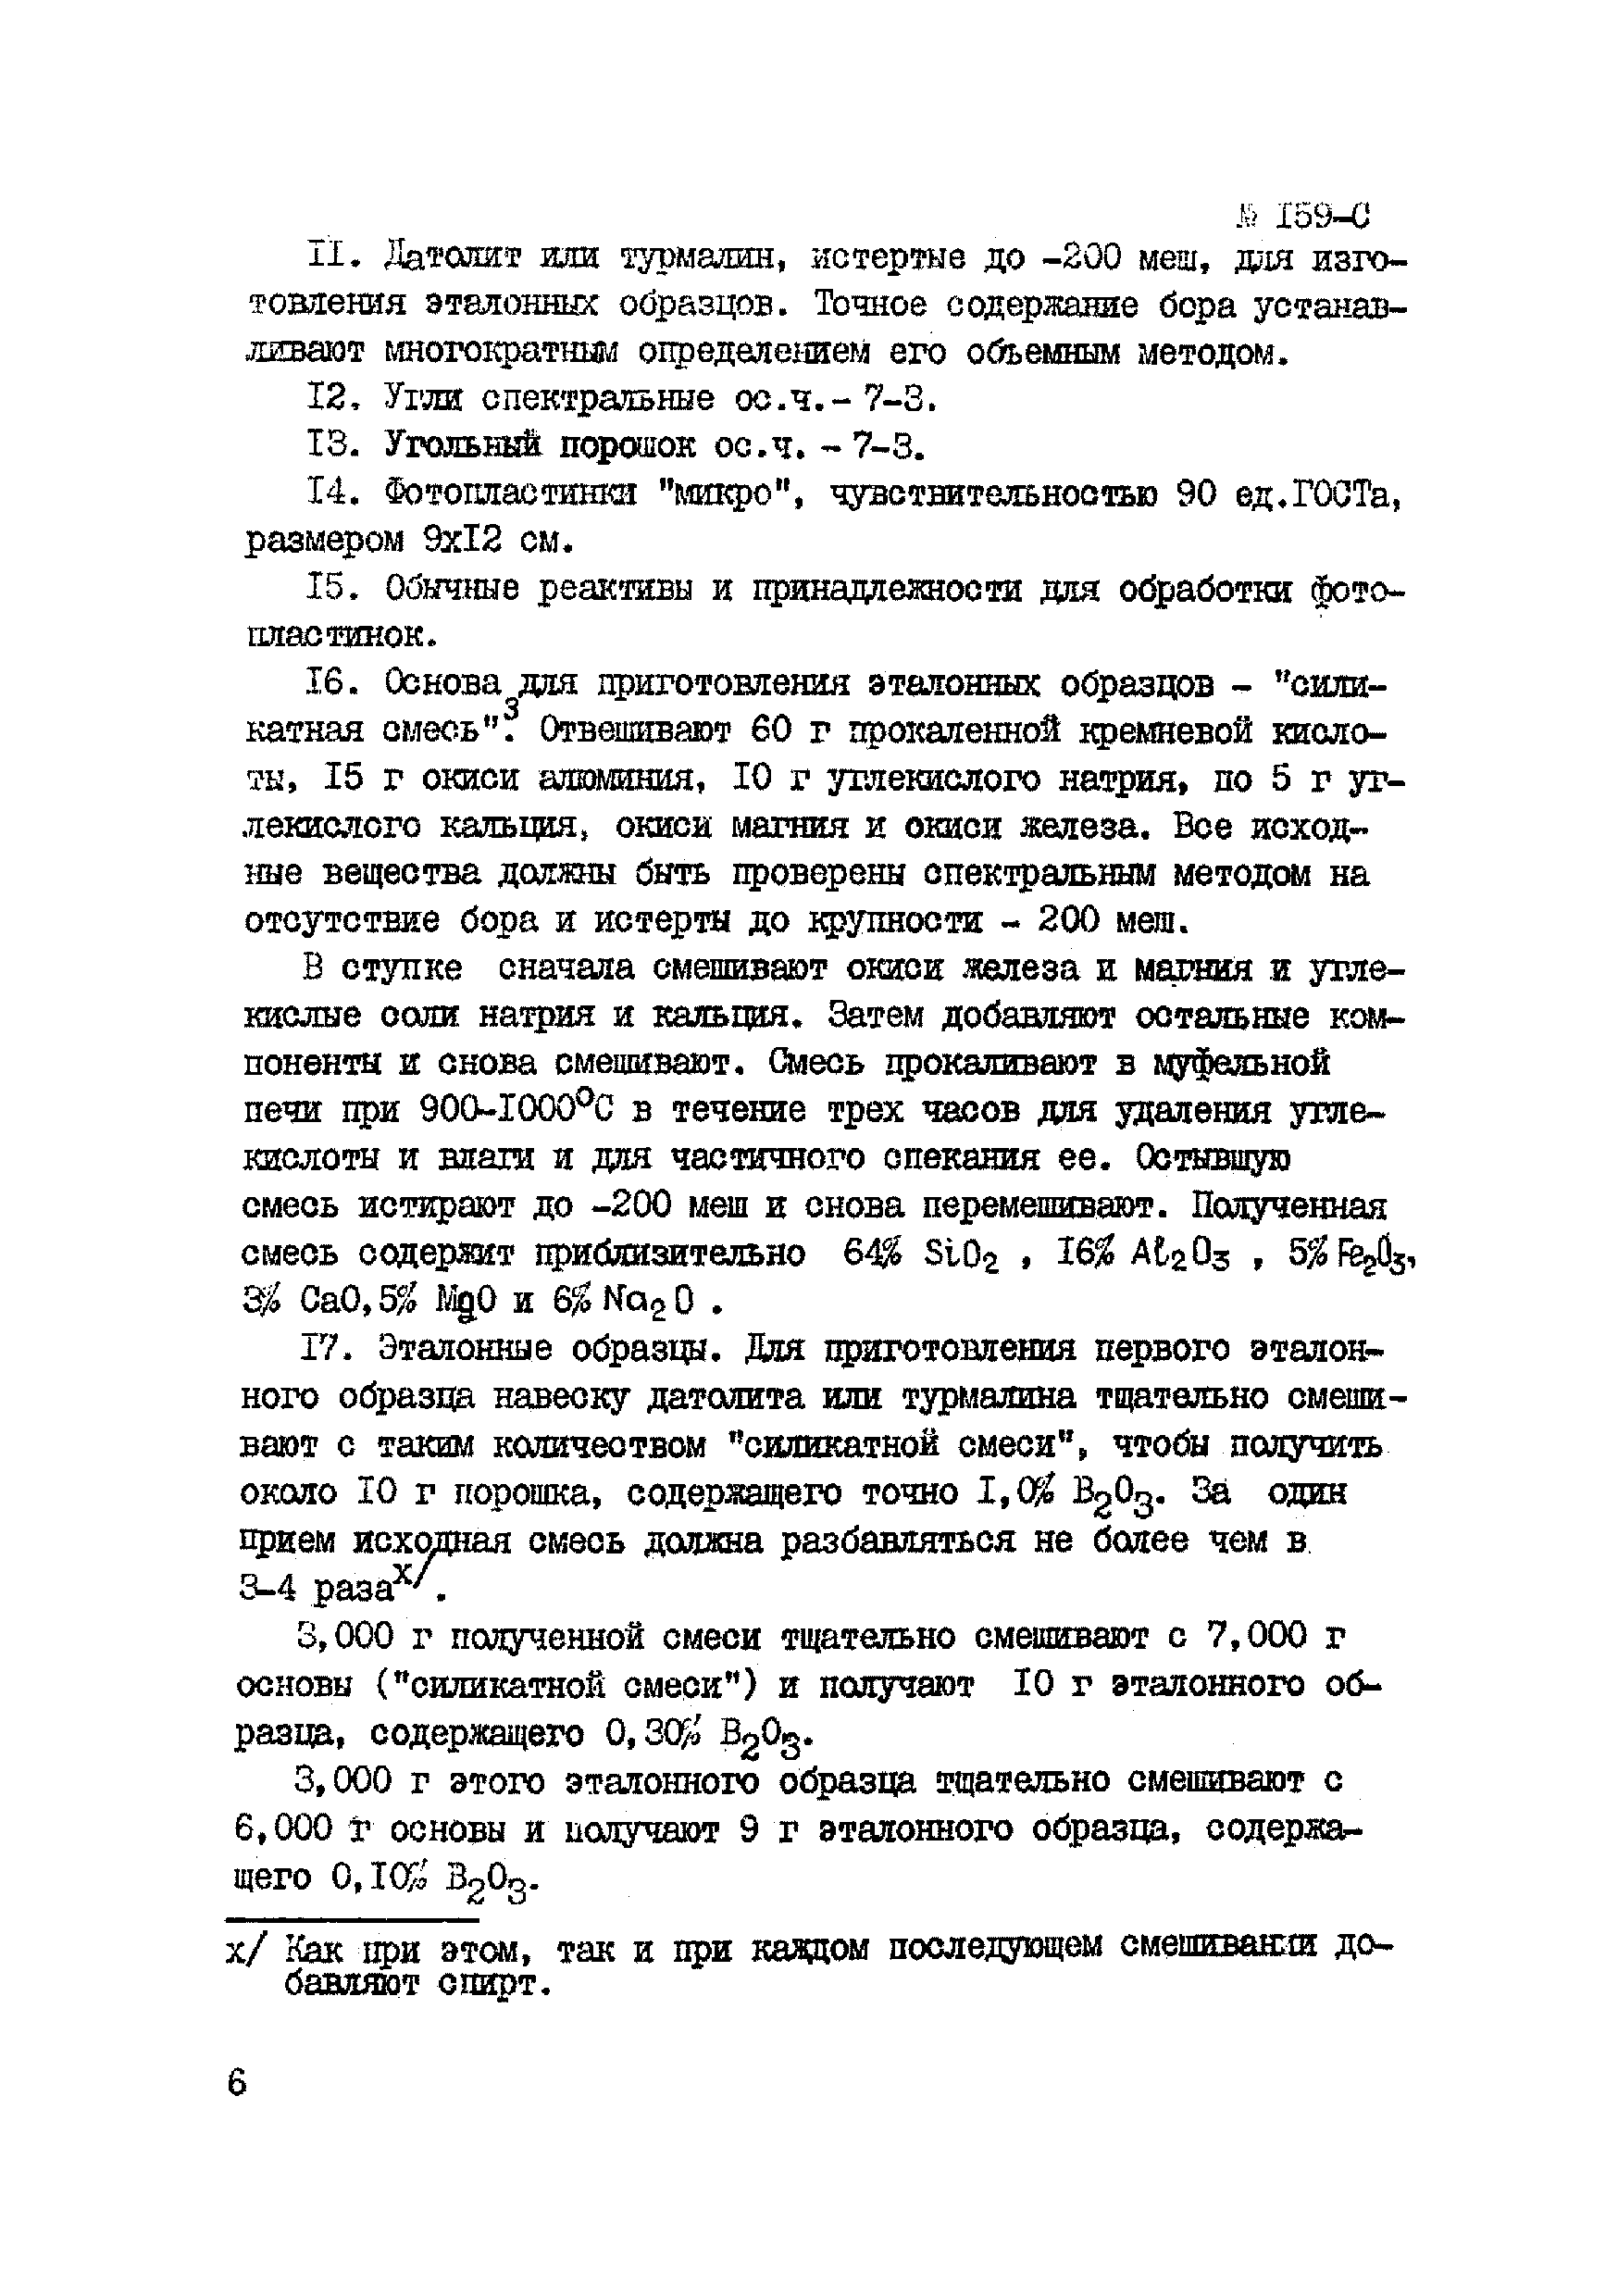 Инструкция НСАМ 159-С